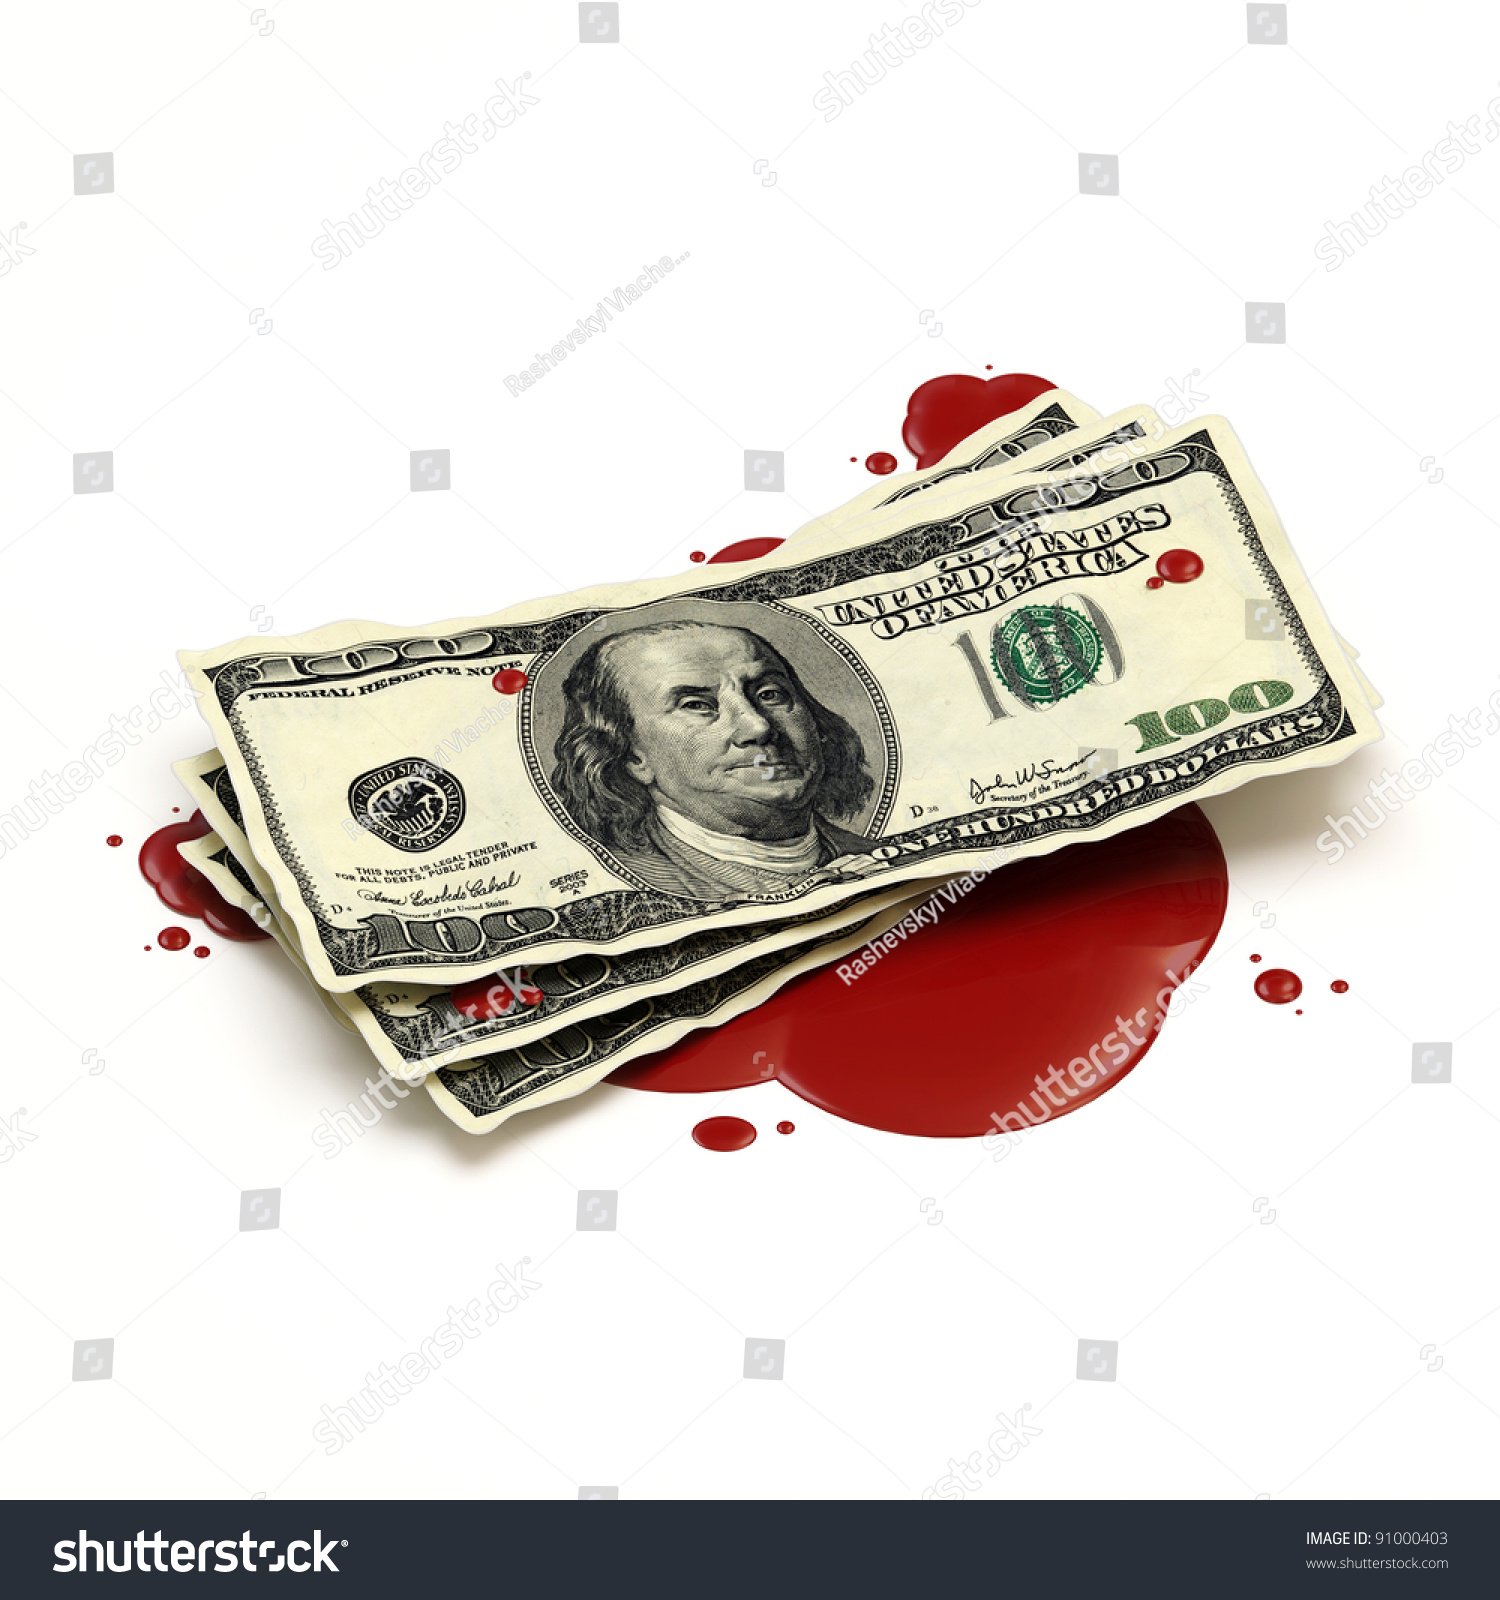 Resultado de imagen para MONEY BLOOD